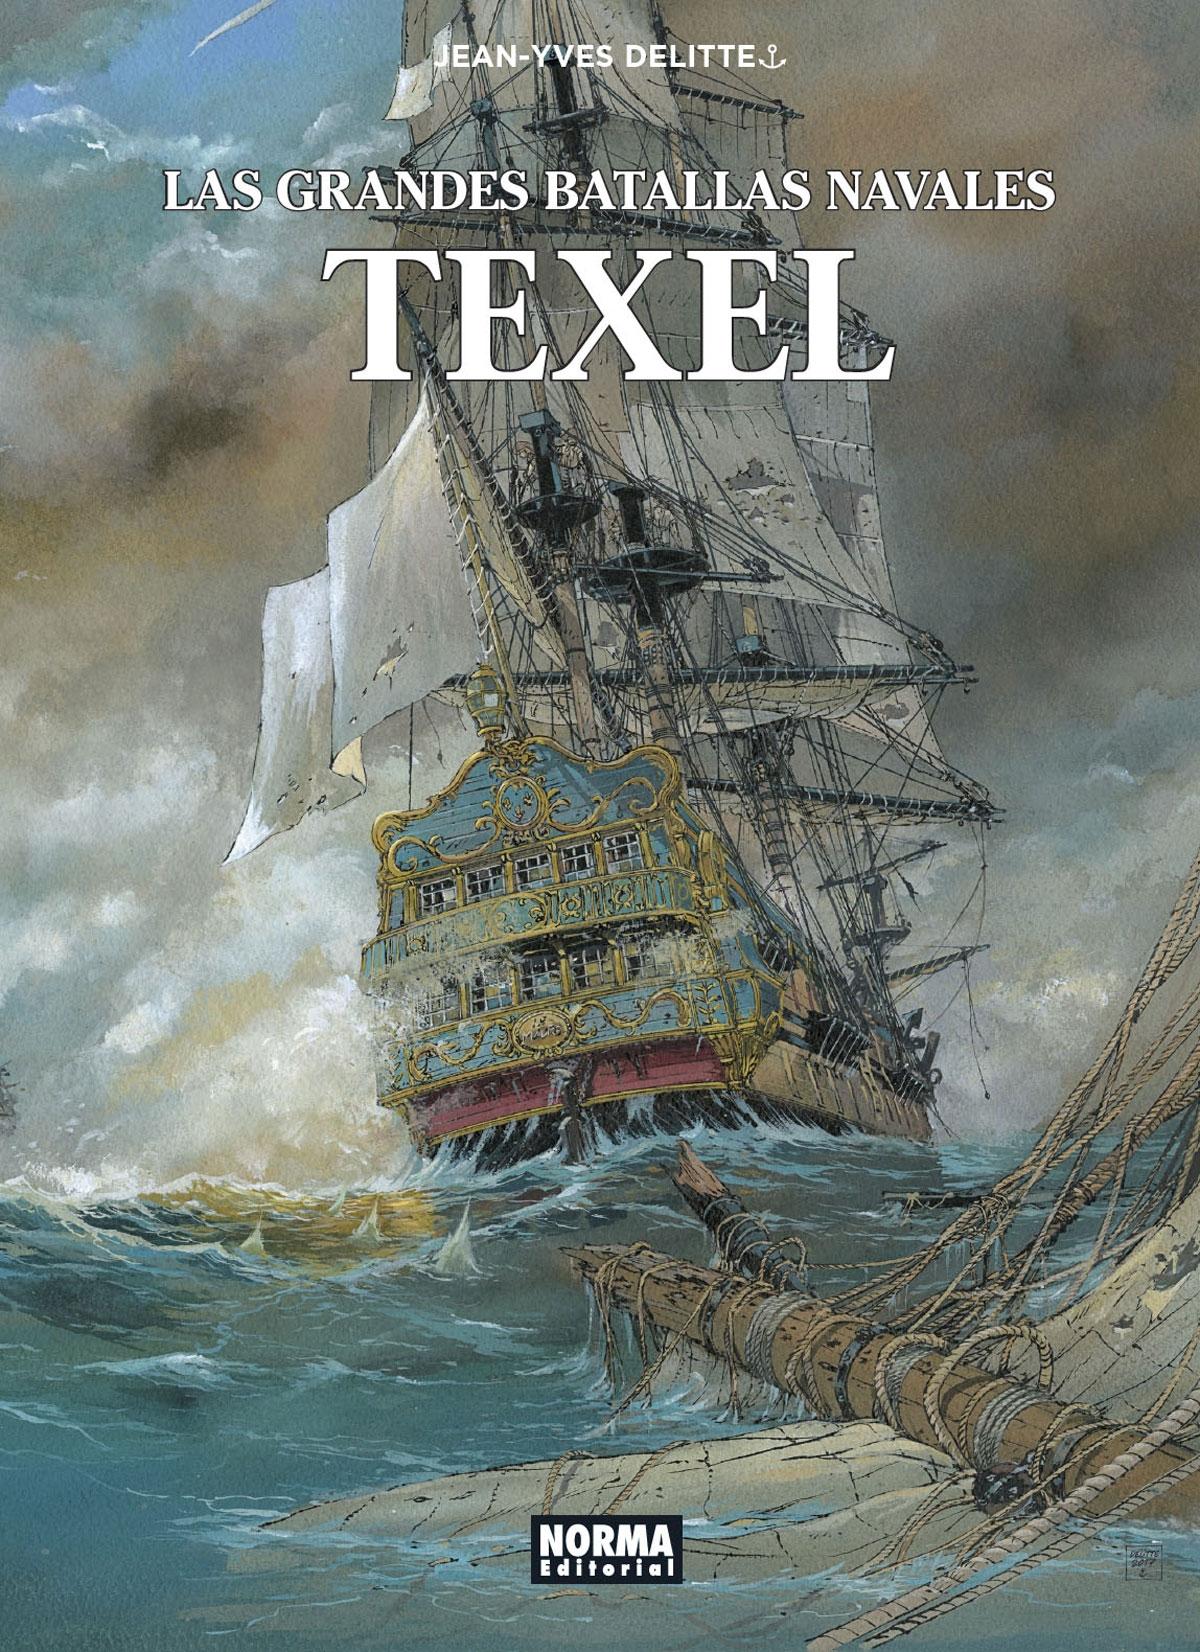 Las Grandes Batallas Navales 9 "Texel". 